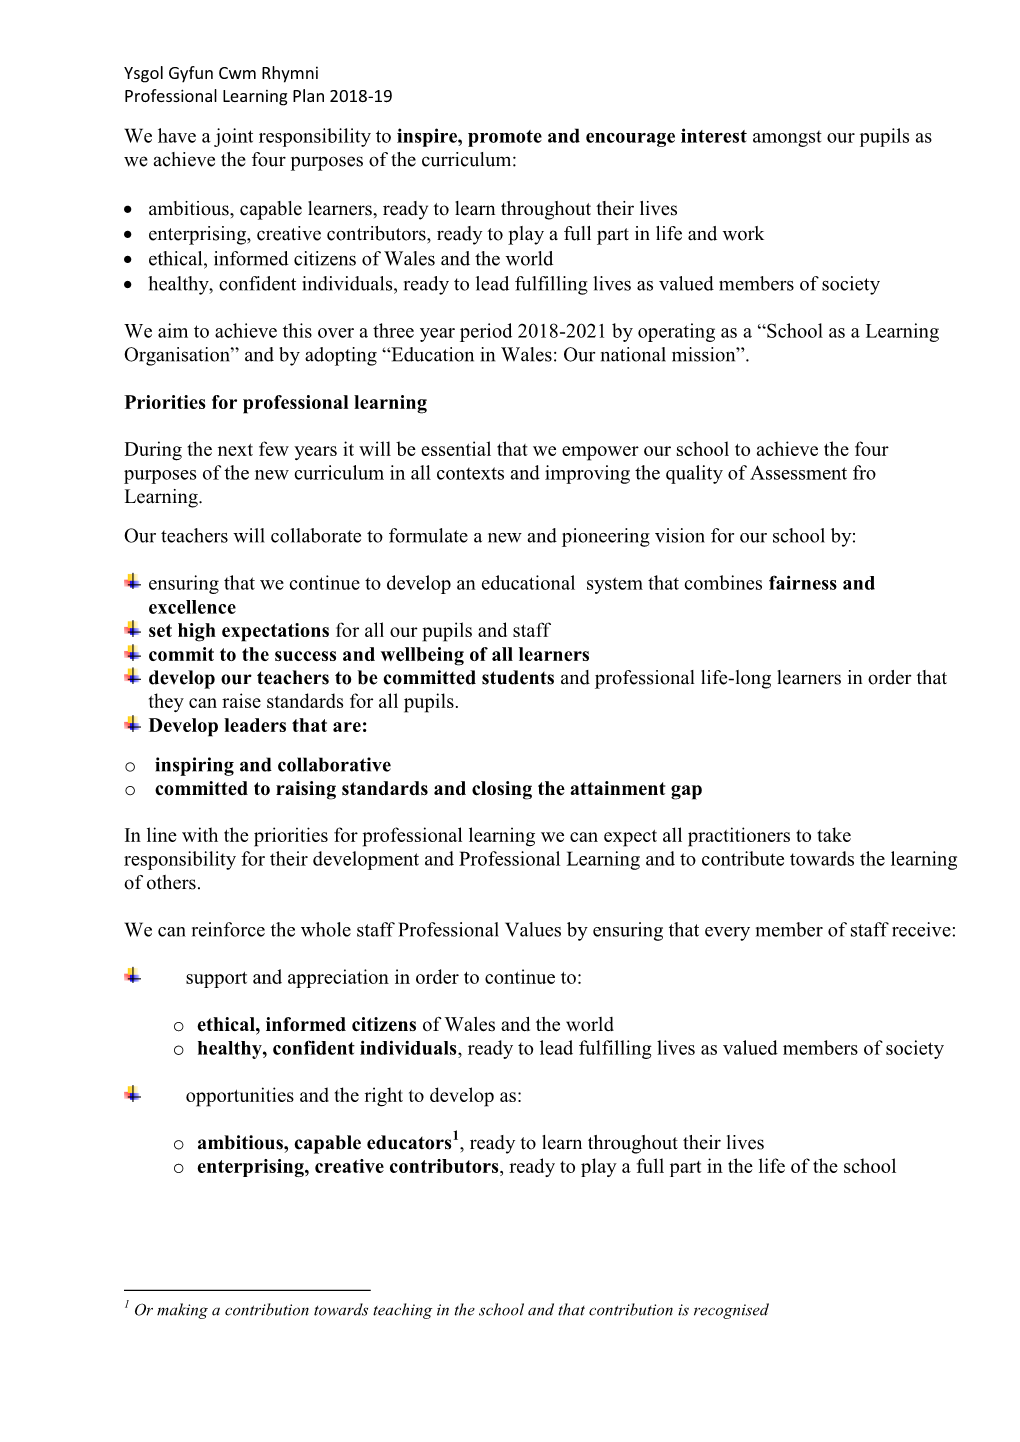 Ysgol Gyfun Cwm Rhymni Professional Learning Plan 2018-19